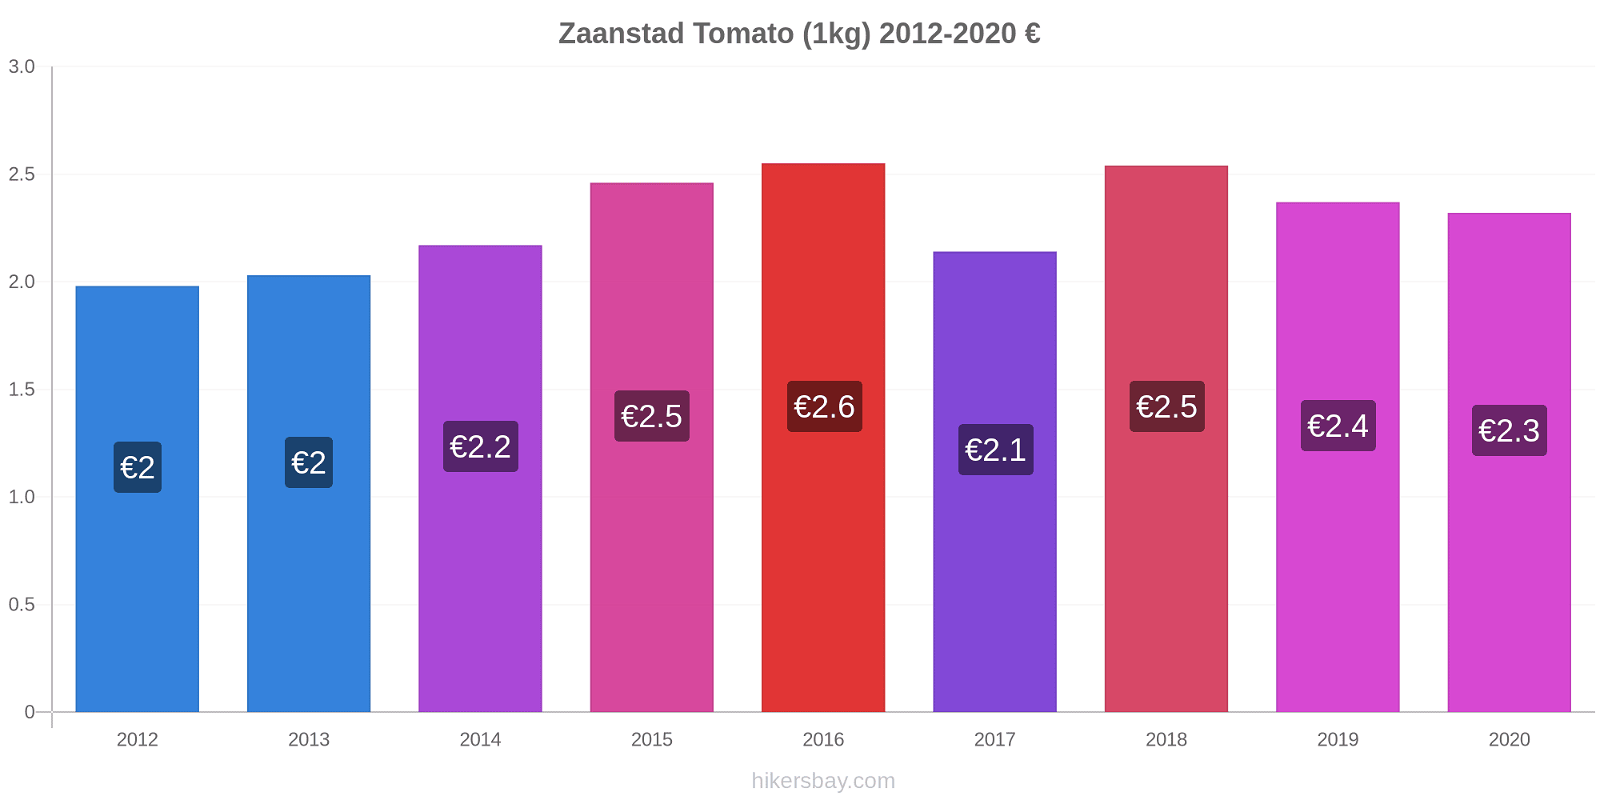 Zaanstad price changes Tomato (1kg) hikersbay.com